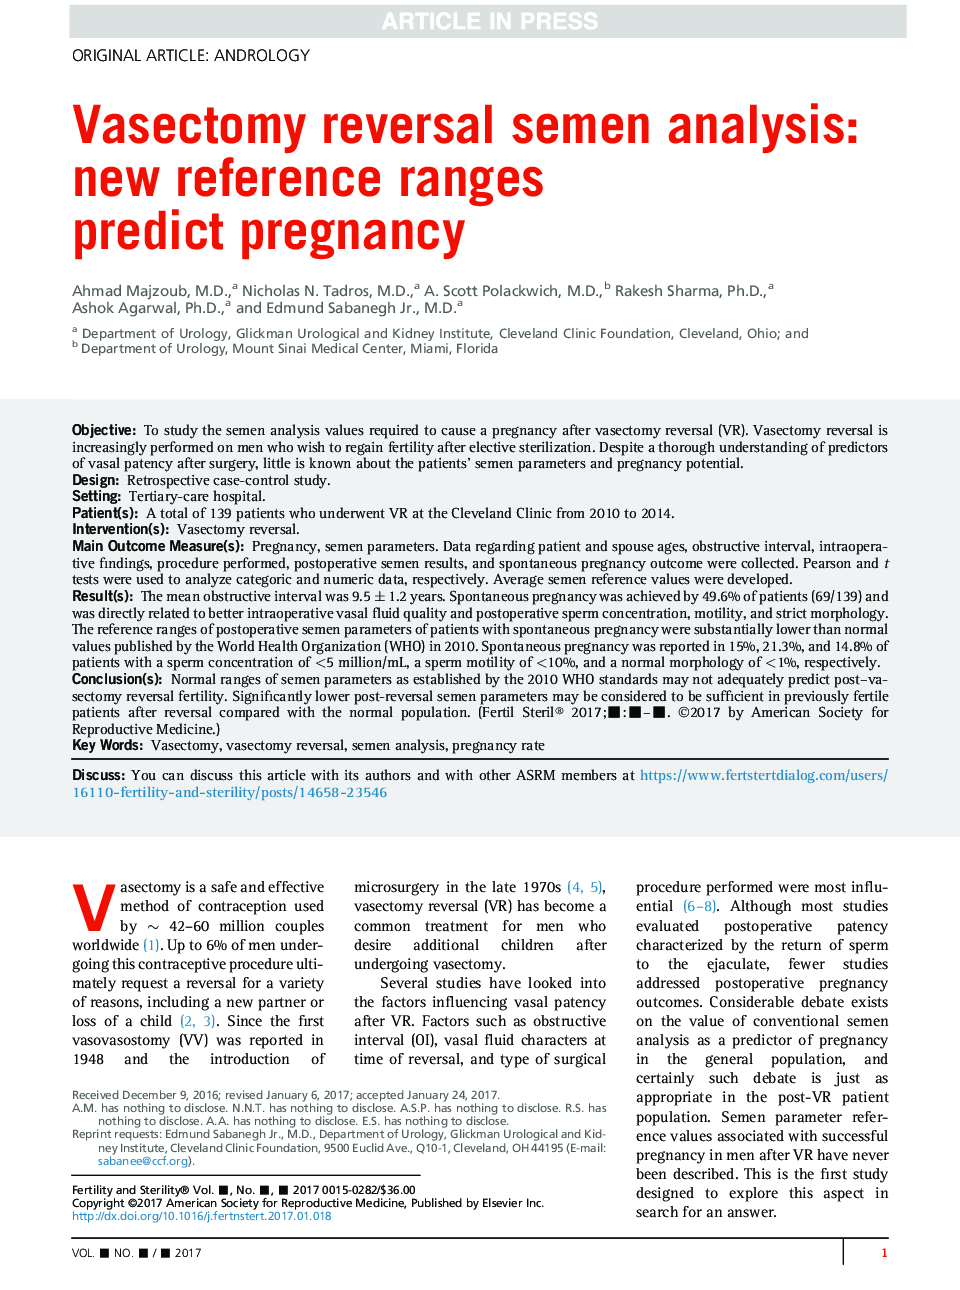 تجزیه و تحلیل مایع منی وازکتومی: محدوده های مرجع جدید پیش بینی حاملگی 